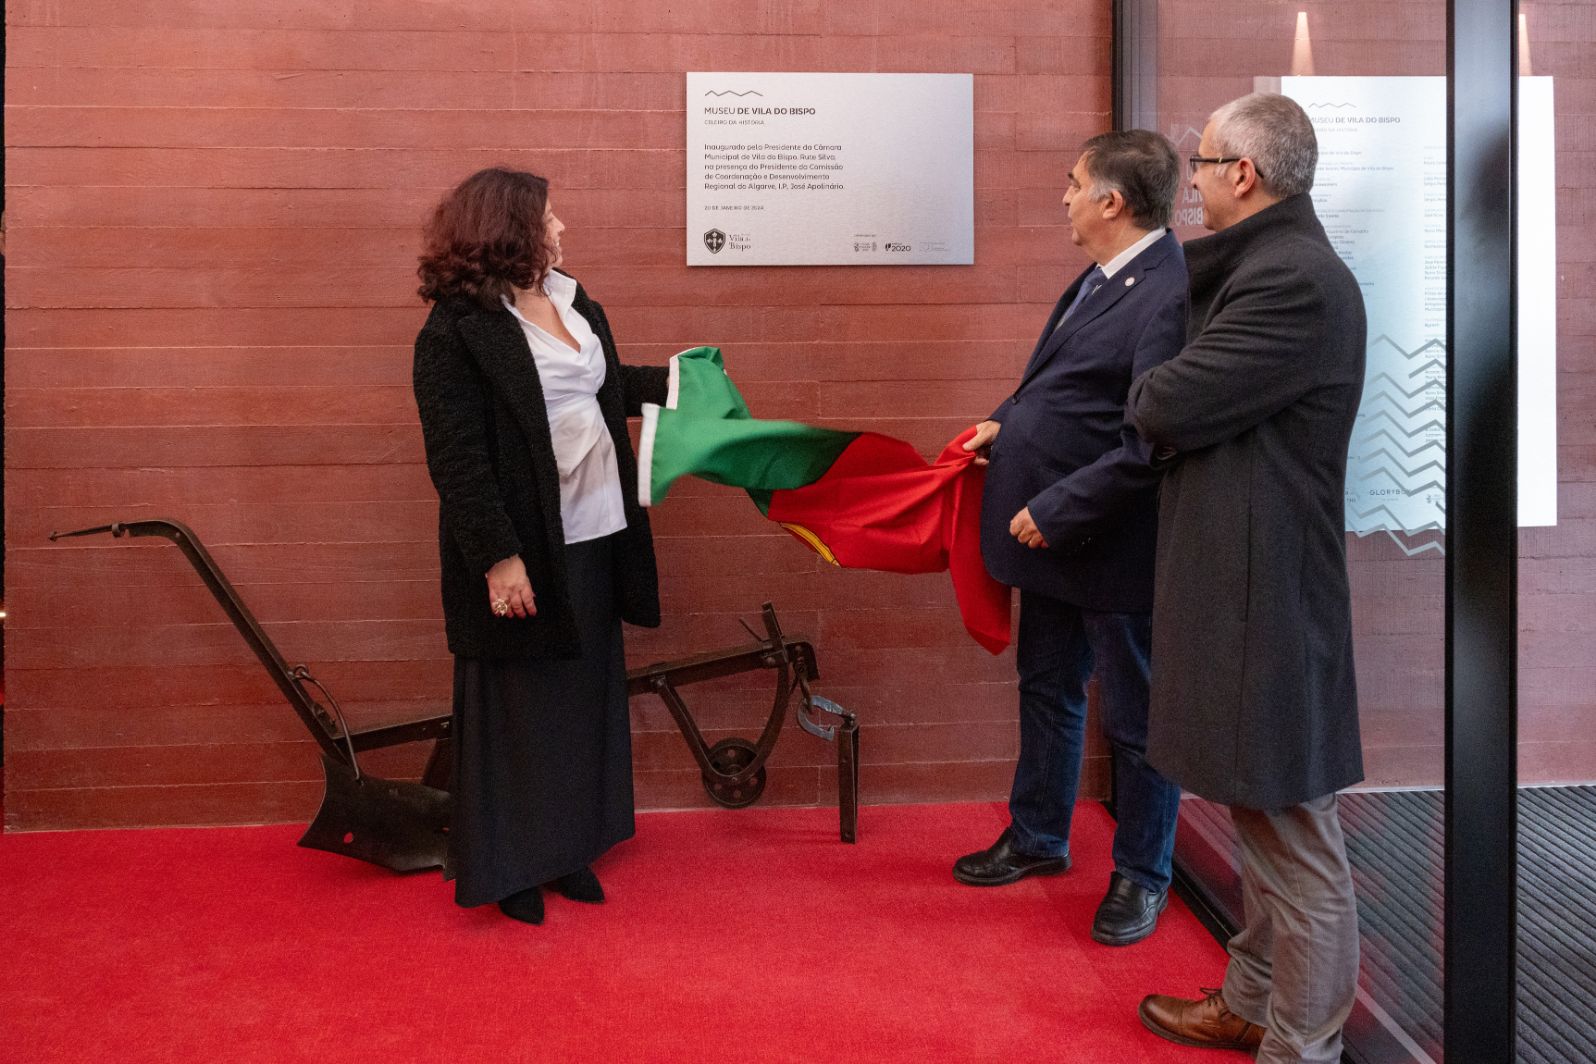 Inauguração do Museu de Vila do Bispo - Celeiro da História